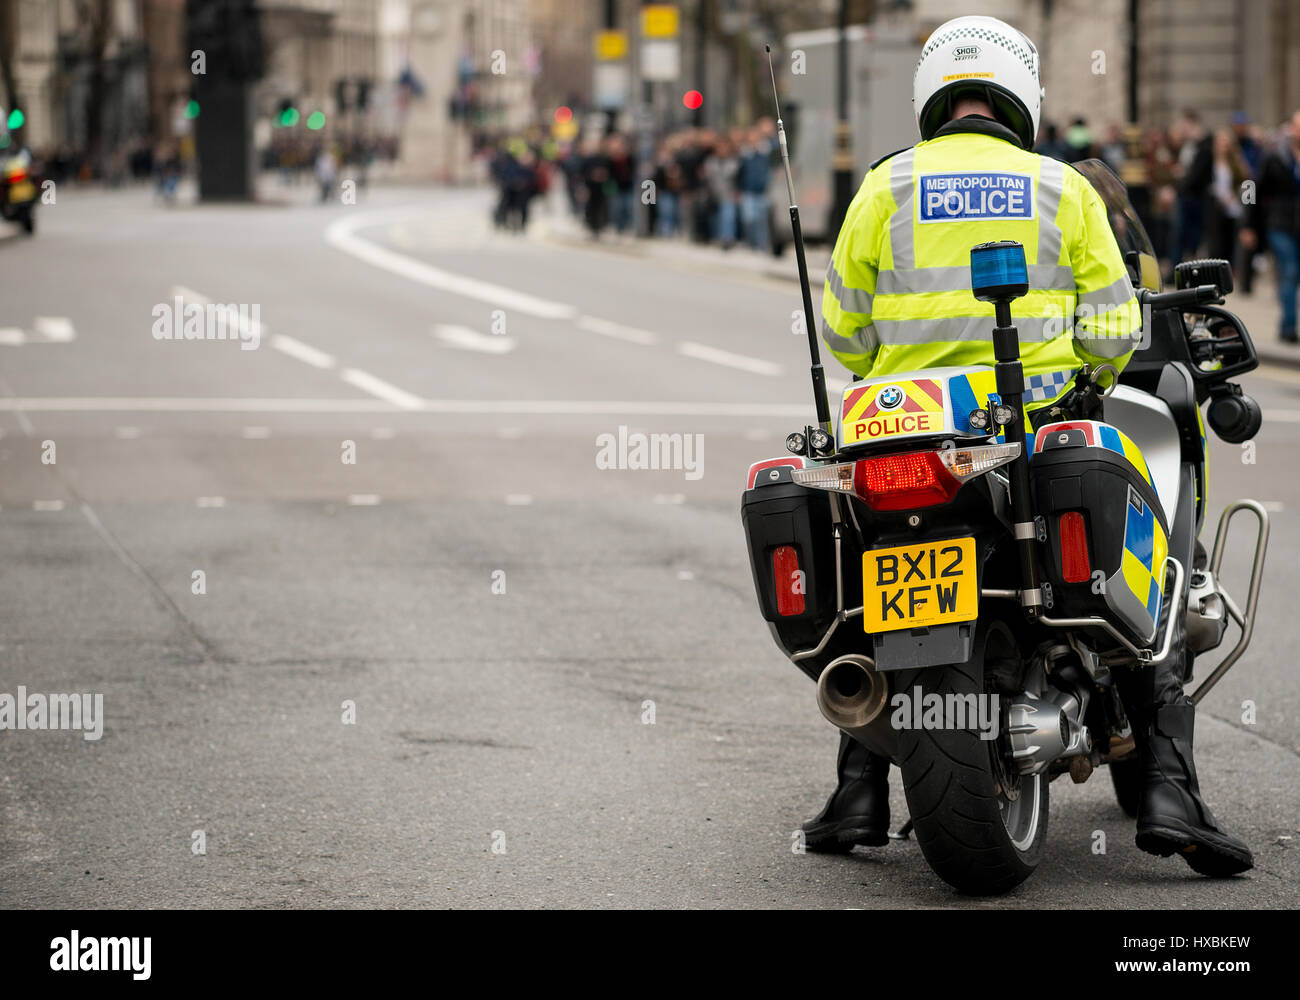 Agents de la Police métropolitaine à mobylette pour assurer la sécurité du public et contrôler le trafic pendant une grande manifestation de protestation, dans le centre de Londres, Royaume-Uni. Banque D'Images